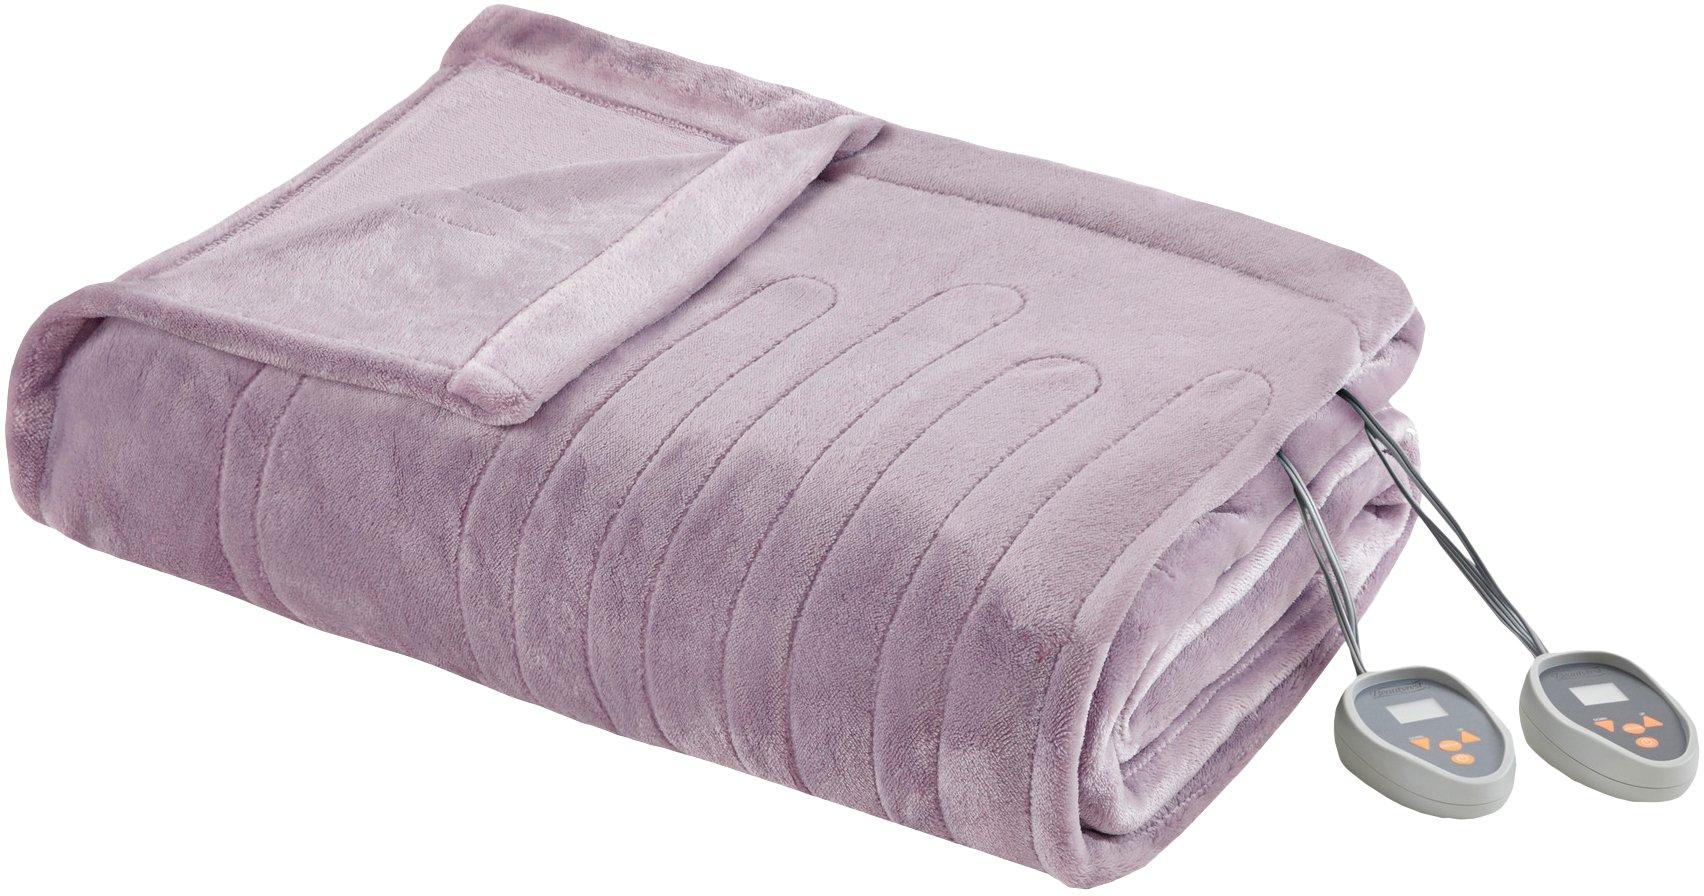 Beautyrest Heated Plush Blanket